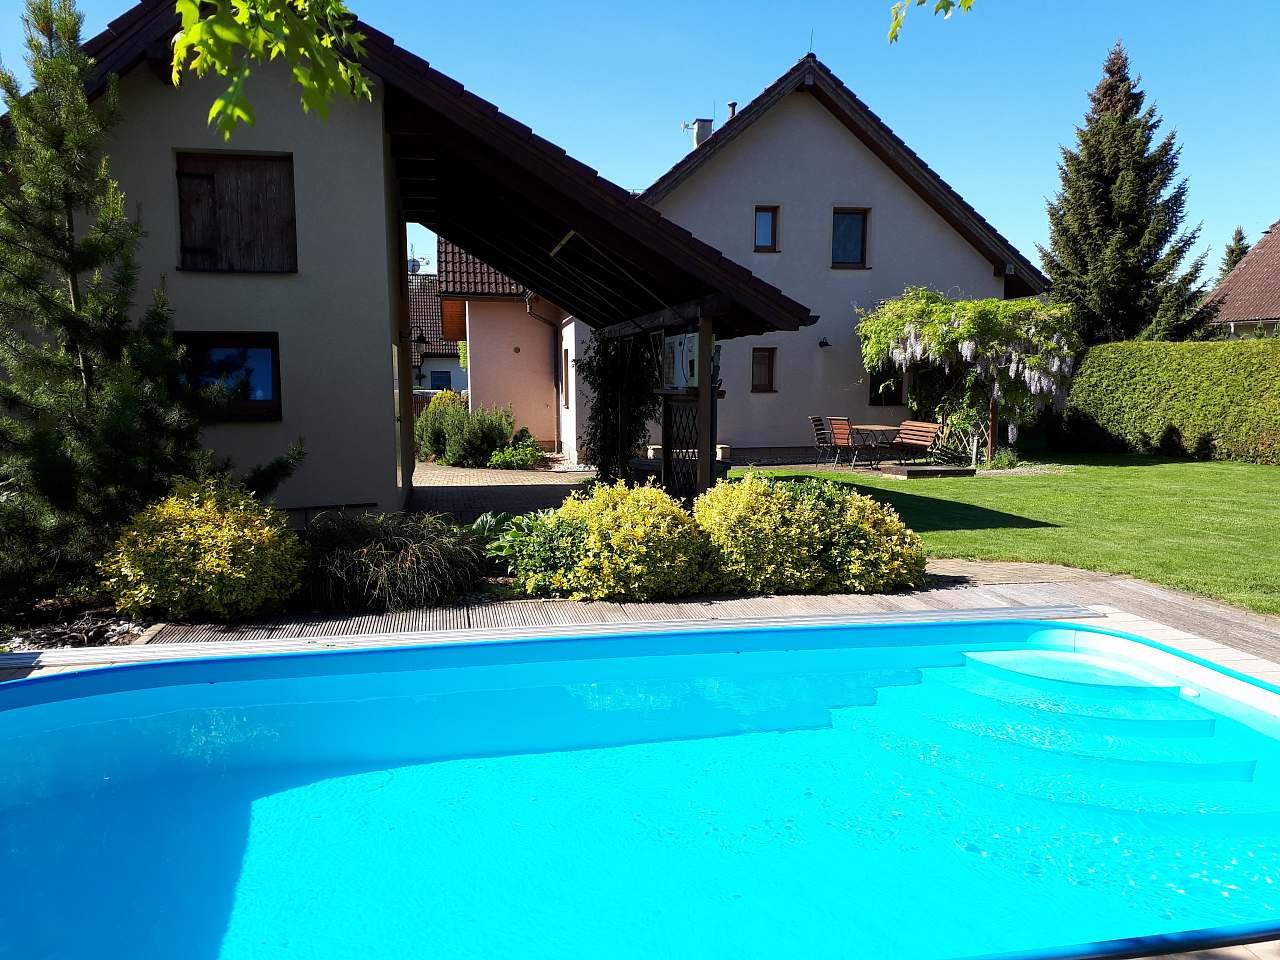 Huis met tuin en zwembad